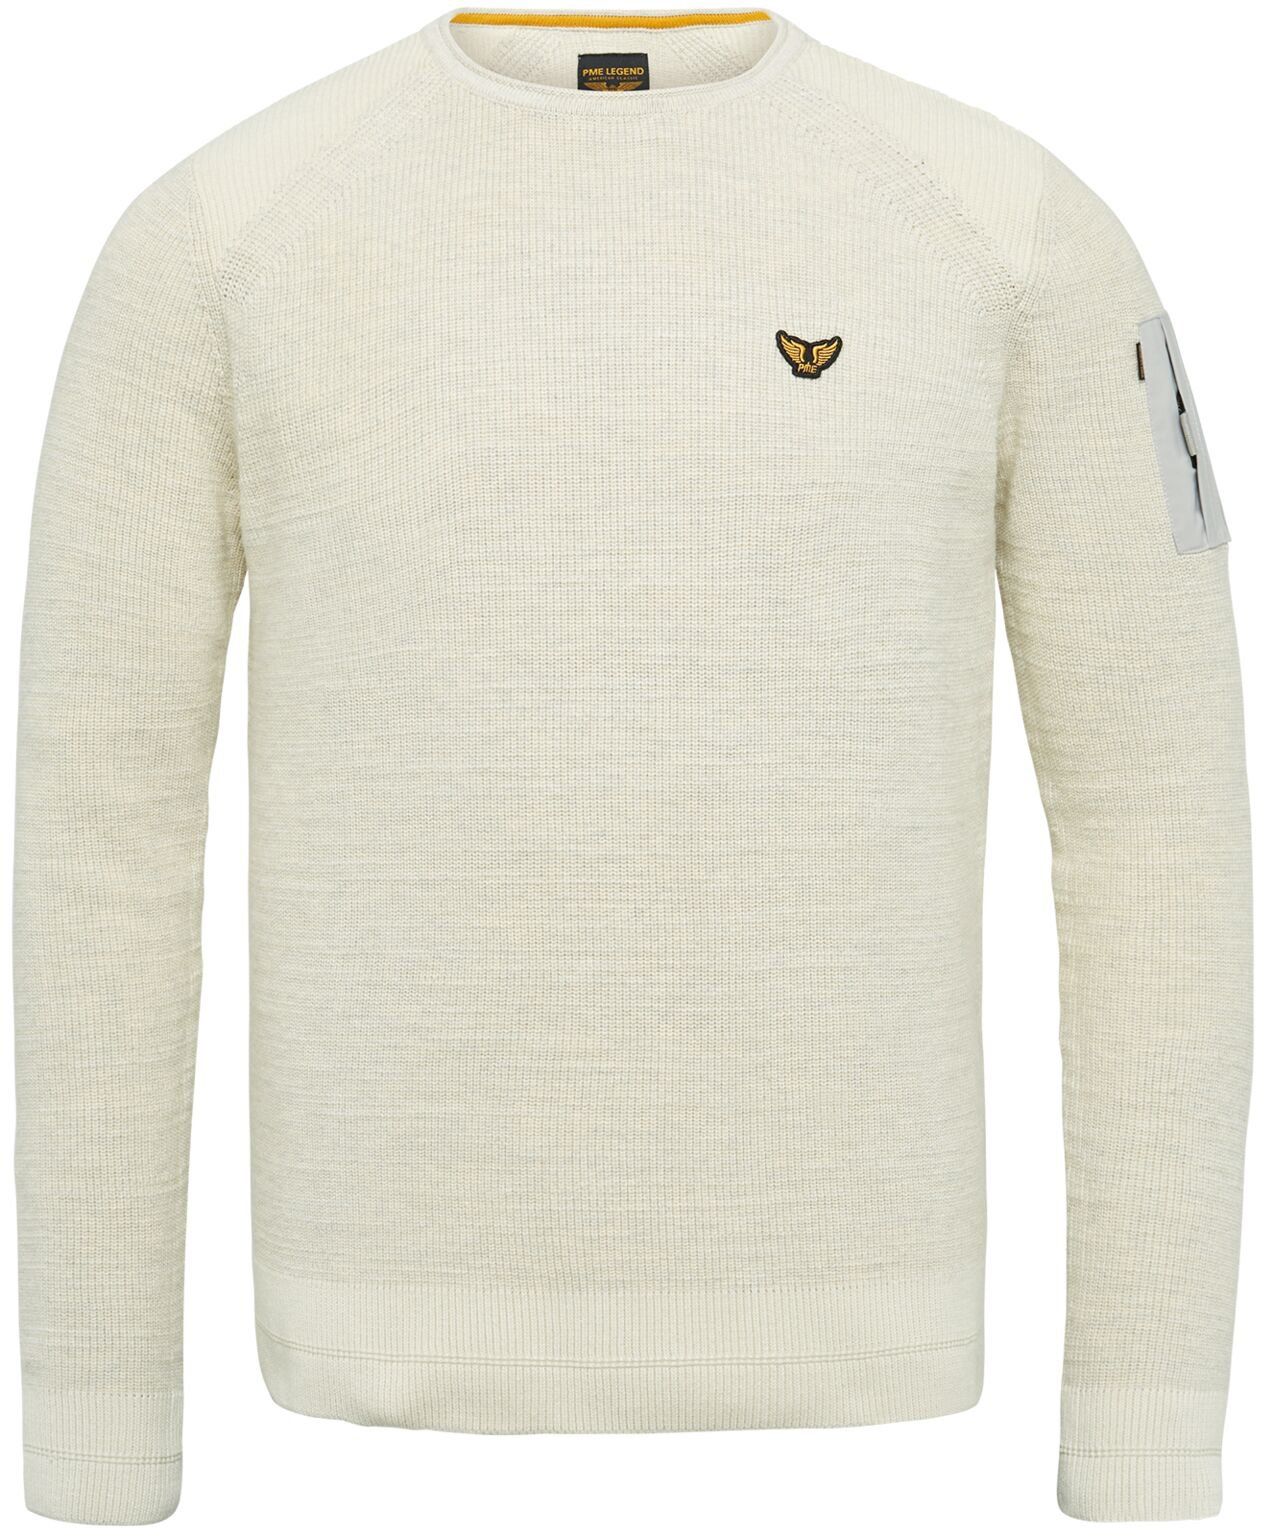 PME Legend Sweater Tricoté Beige taille 3XL